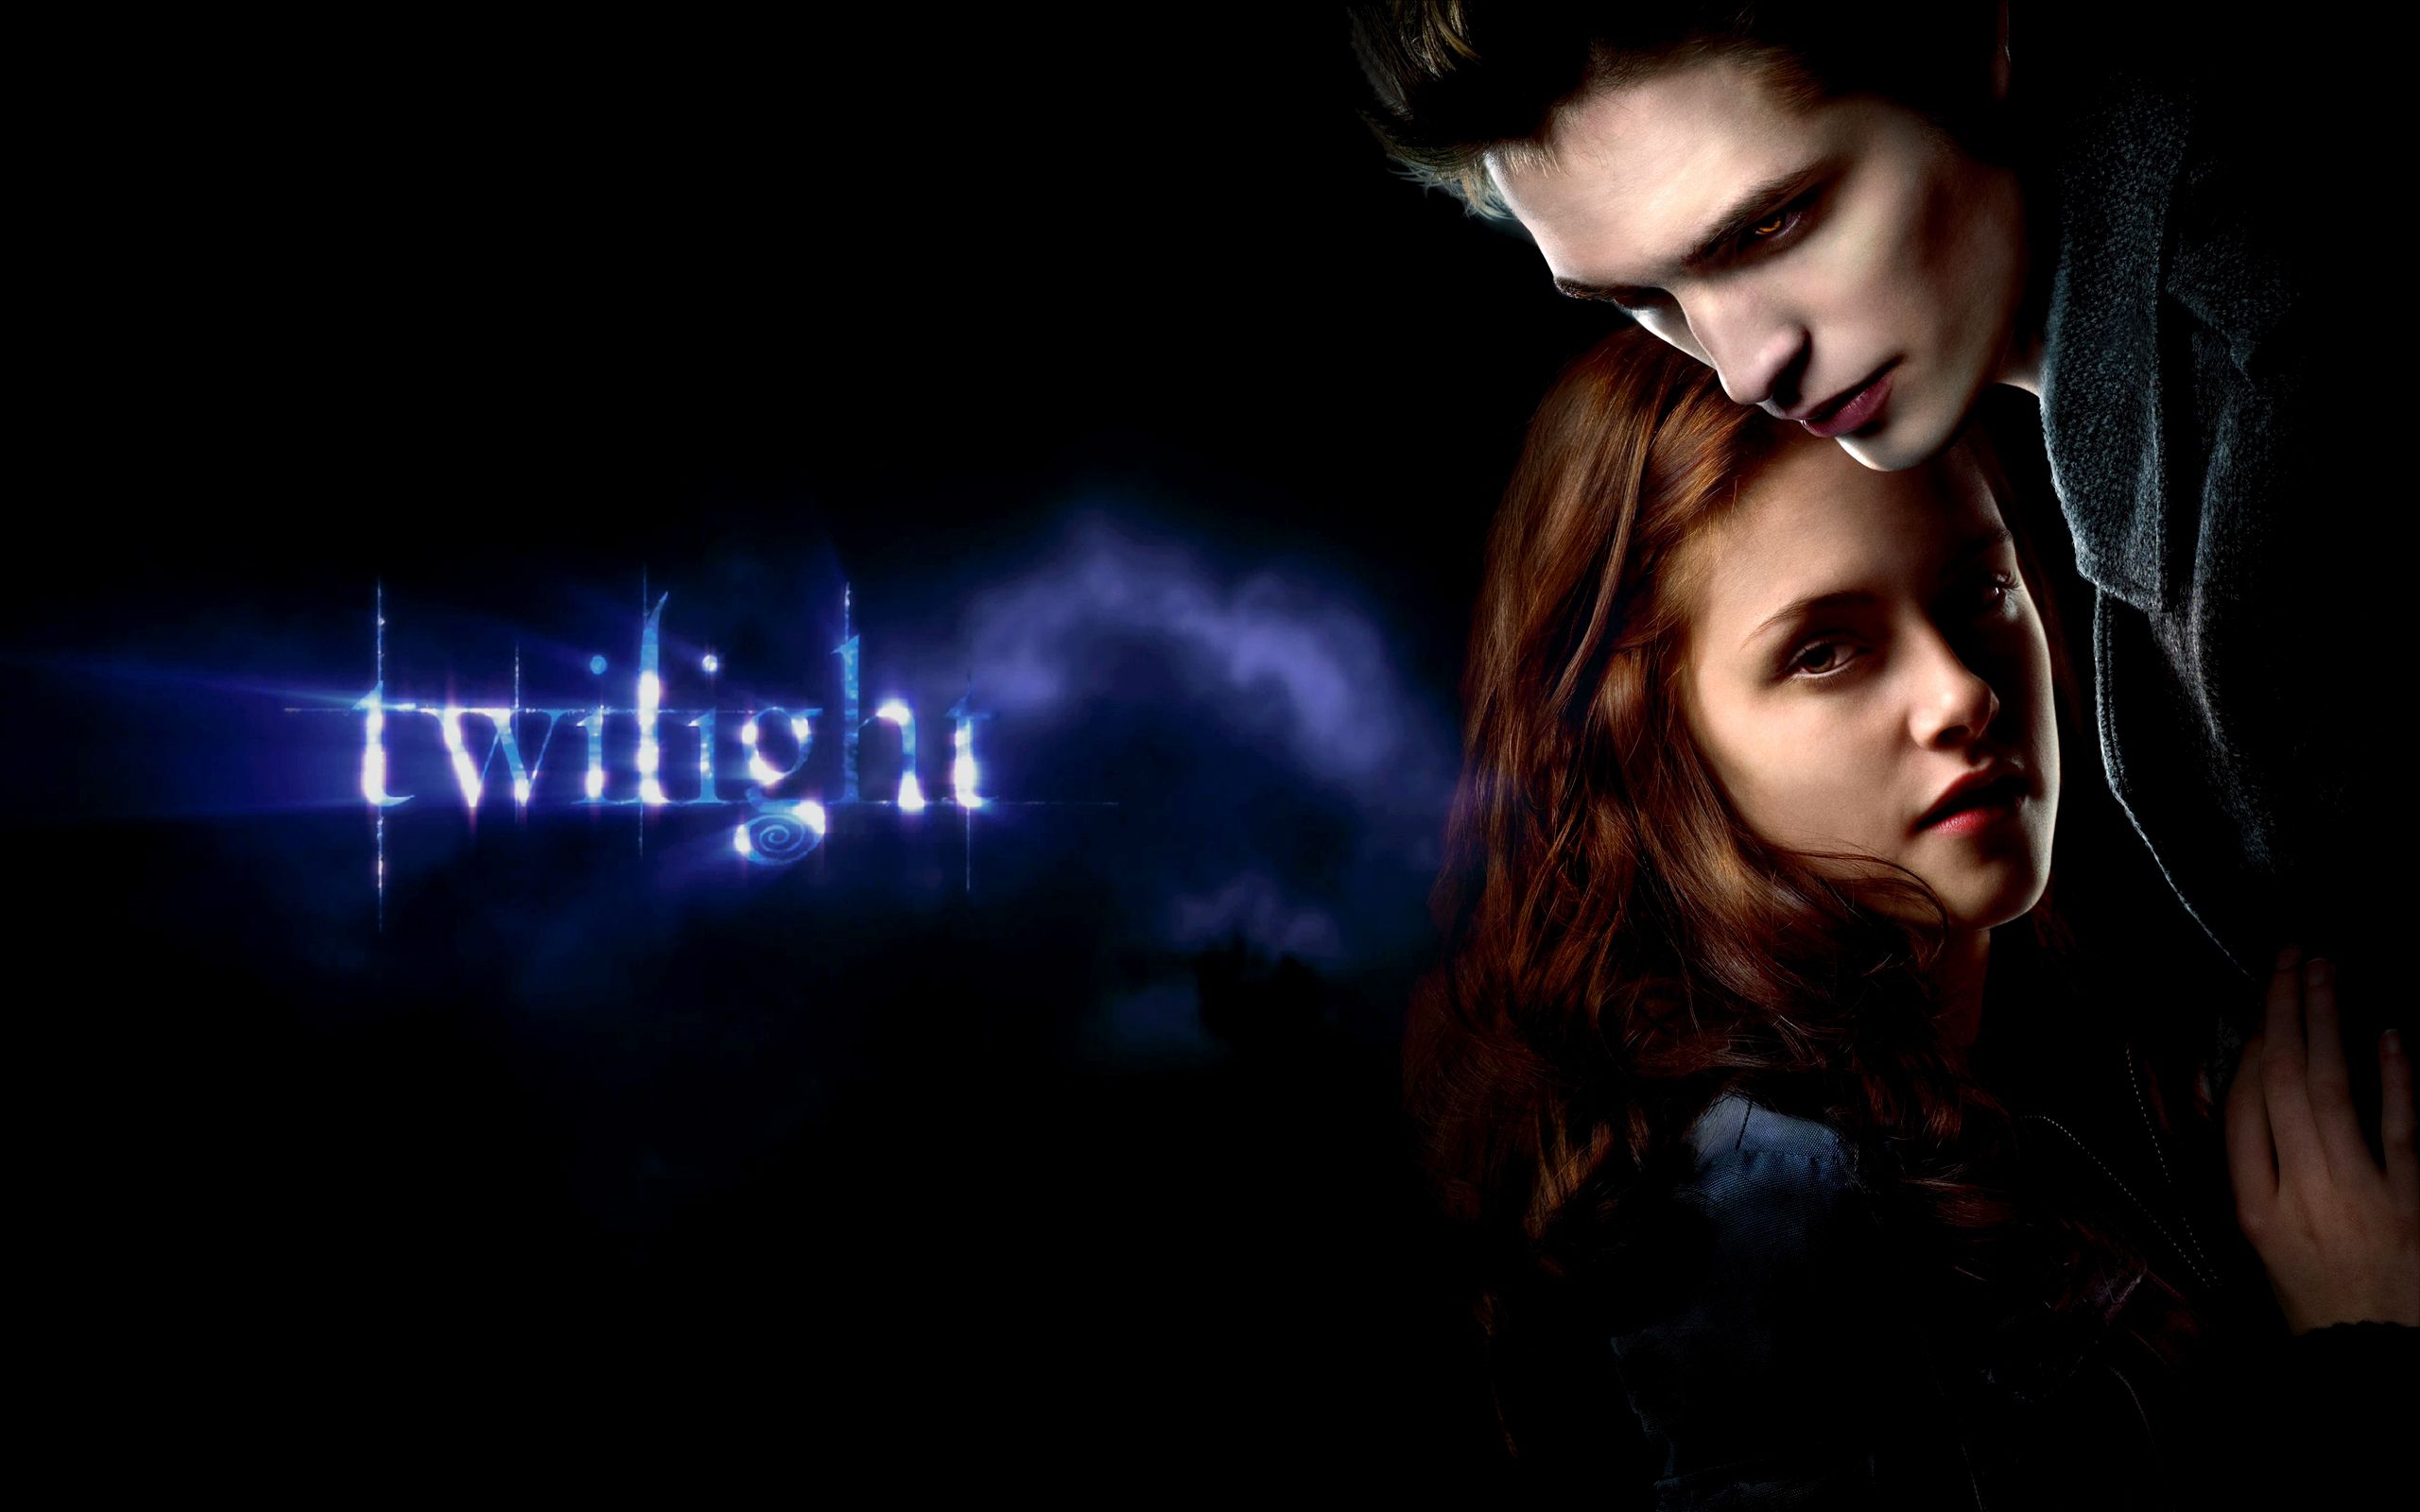 Fonds d'écran Twilight : tous les wallpapers Twilight